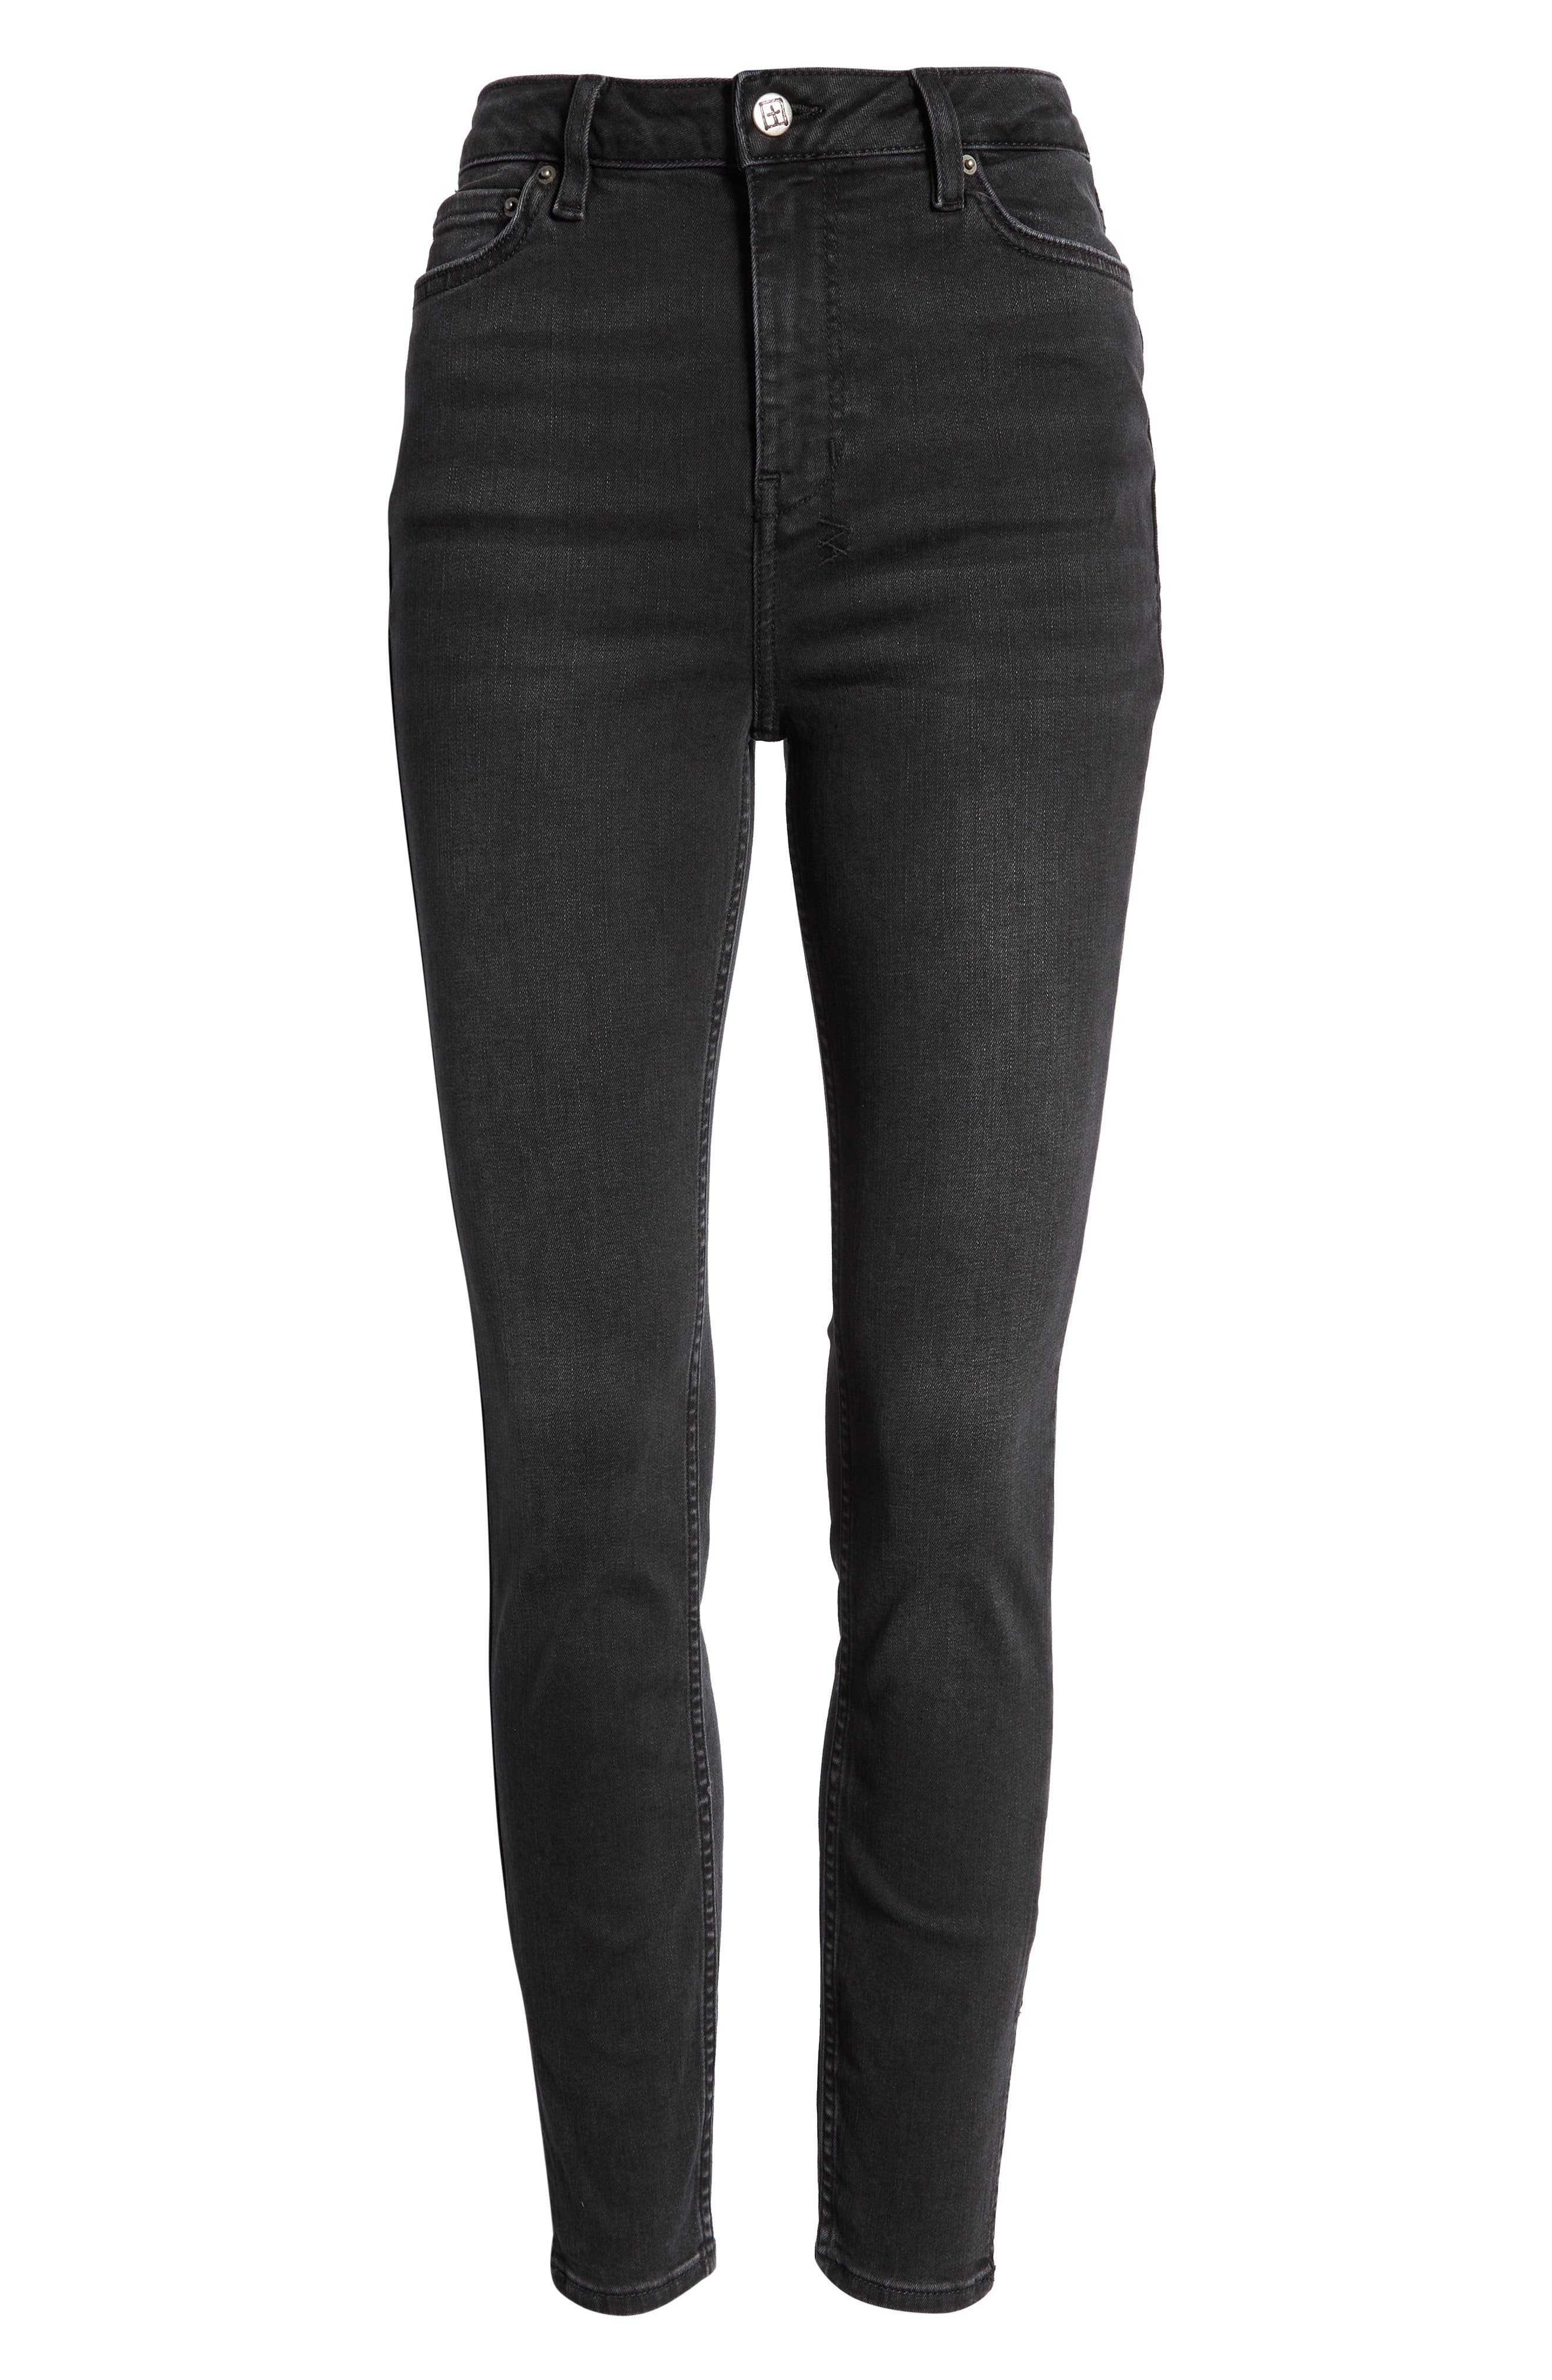 Ksubi Hi 'N' Wasted Twilight Skinny Jeans in Black at Nordstrom, Size 24